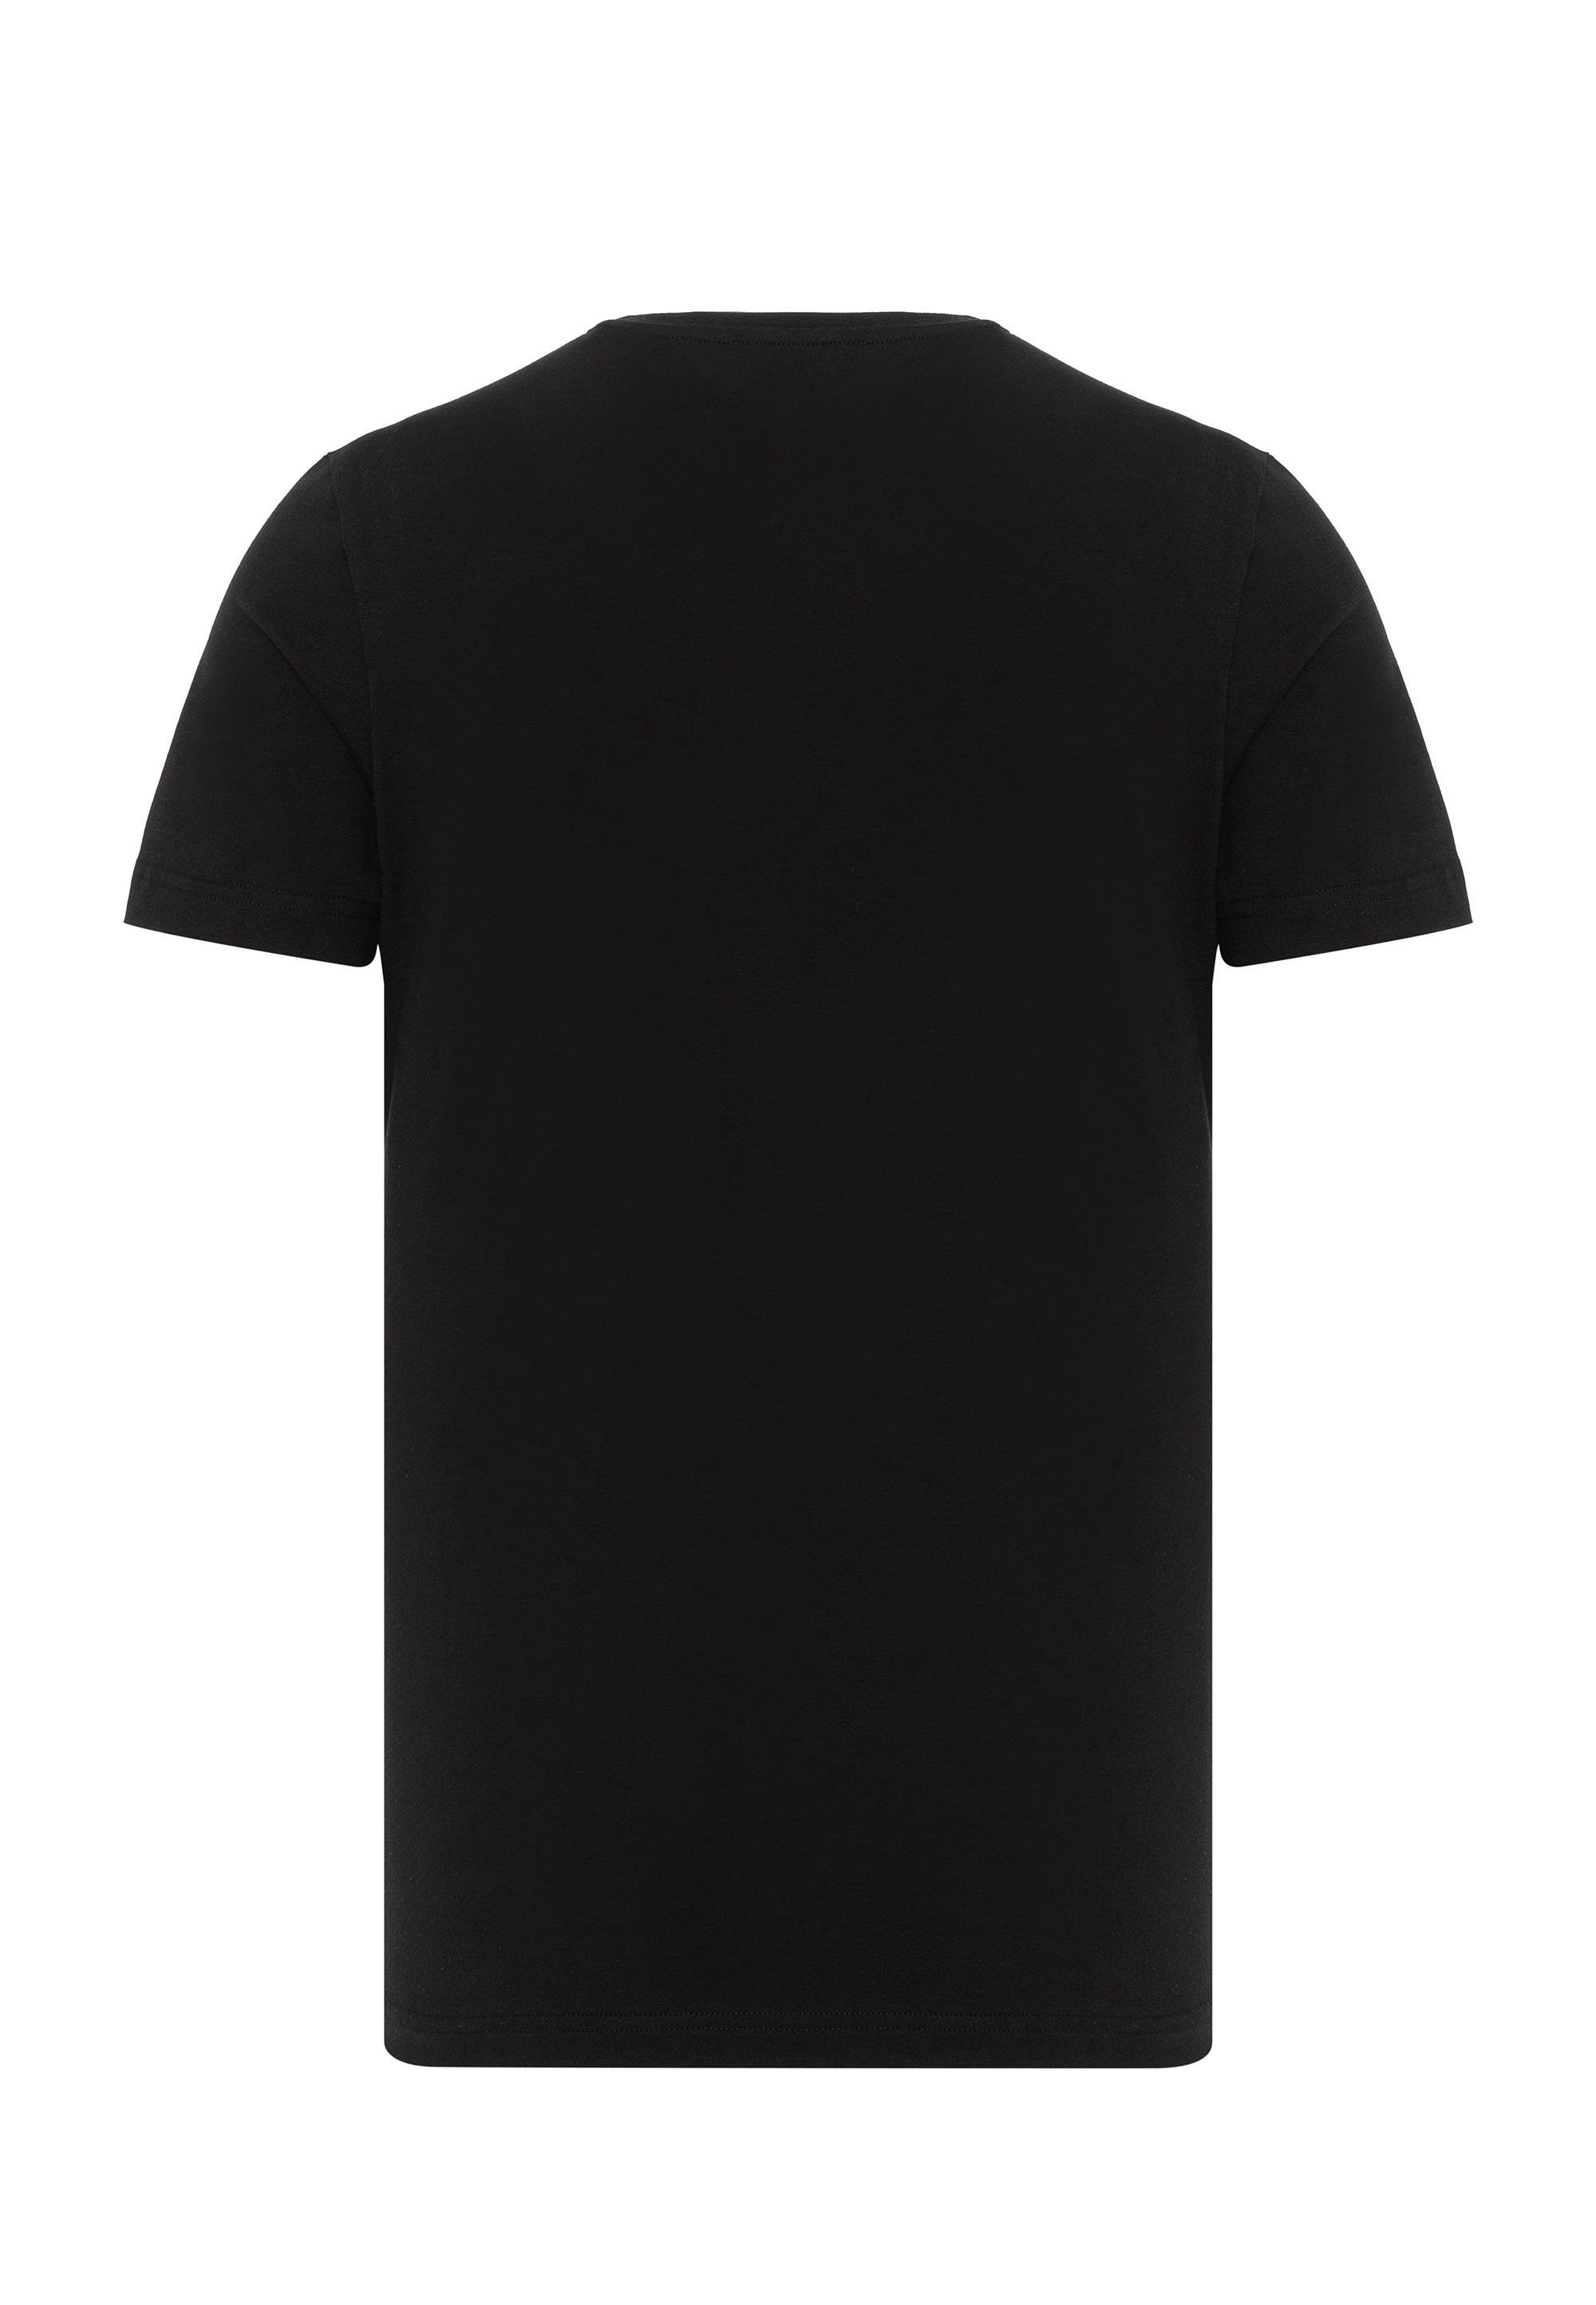 Strass-Print mit T-Shirt schwarz Cipo & Baxx